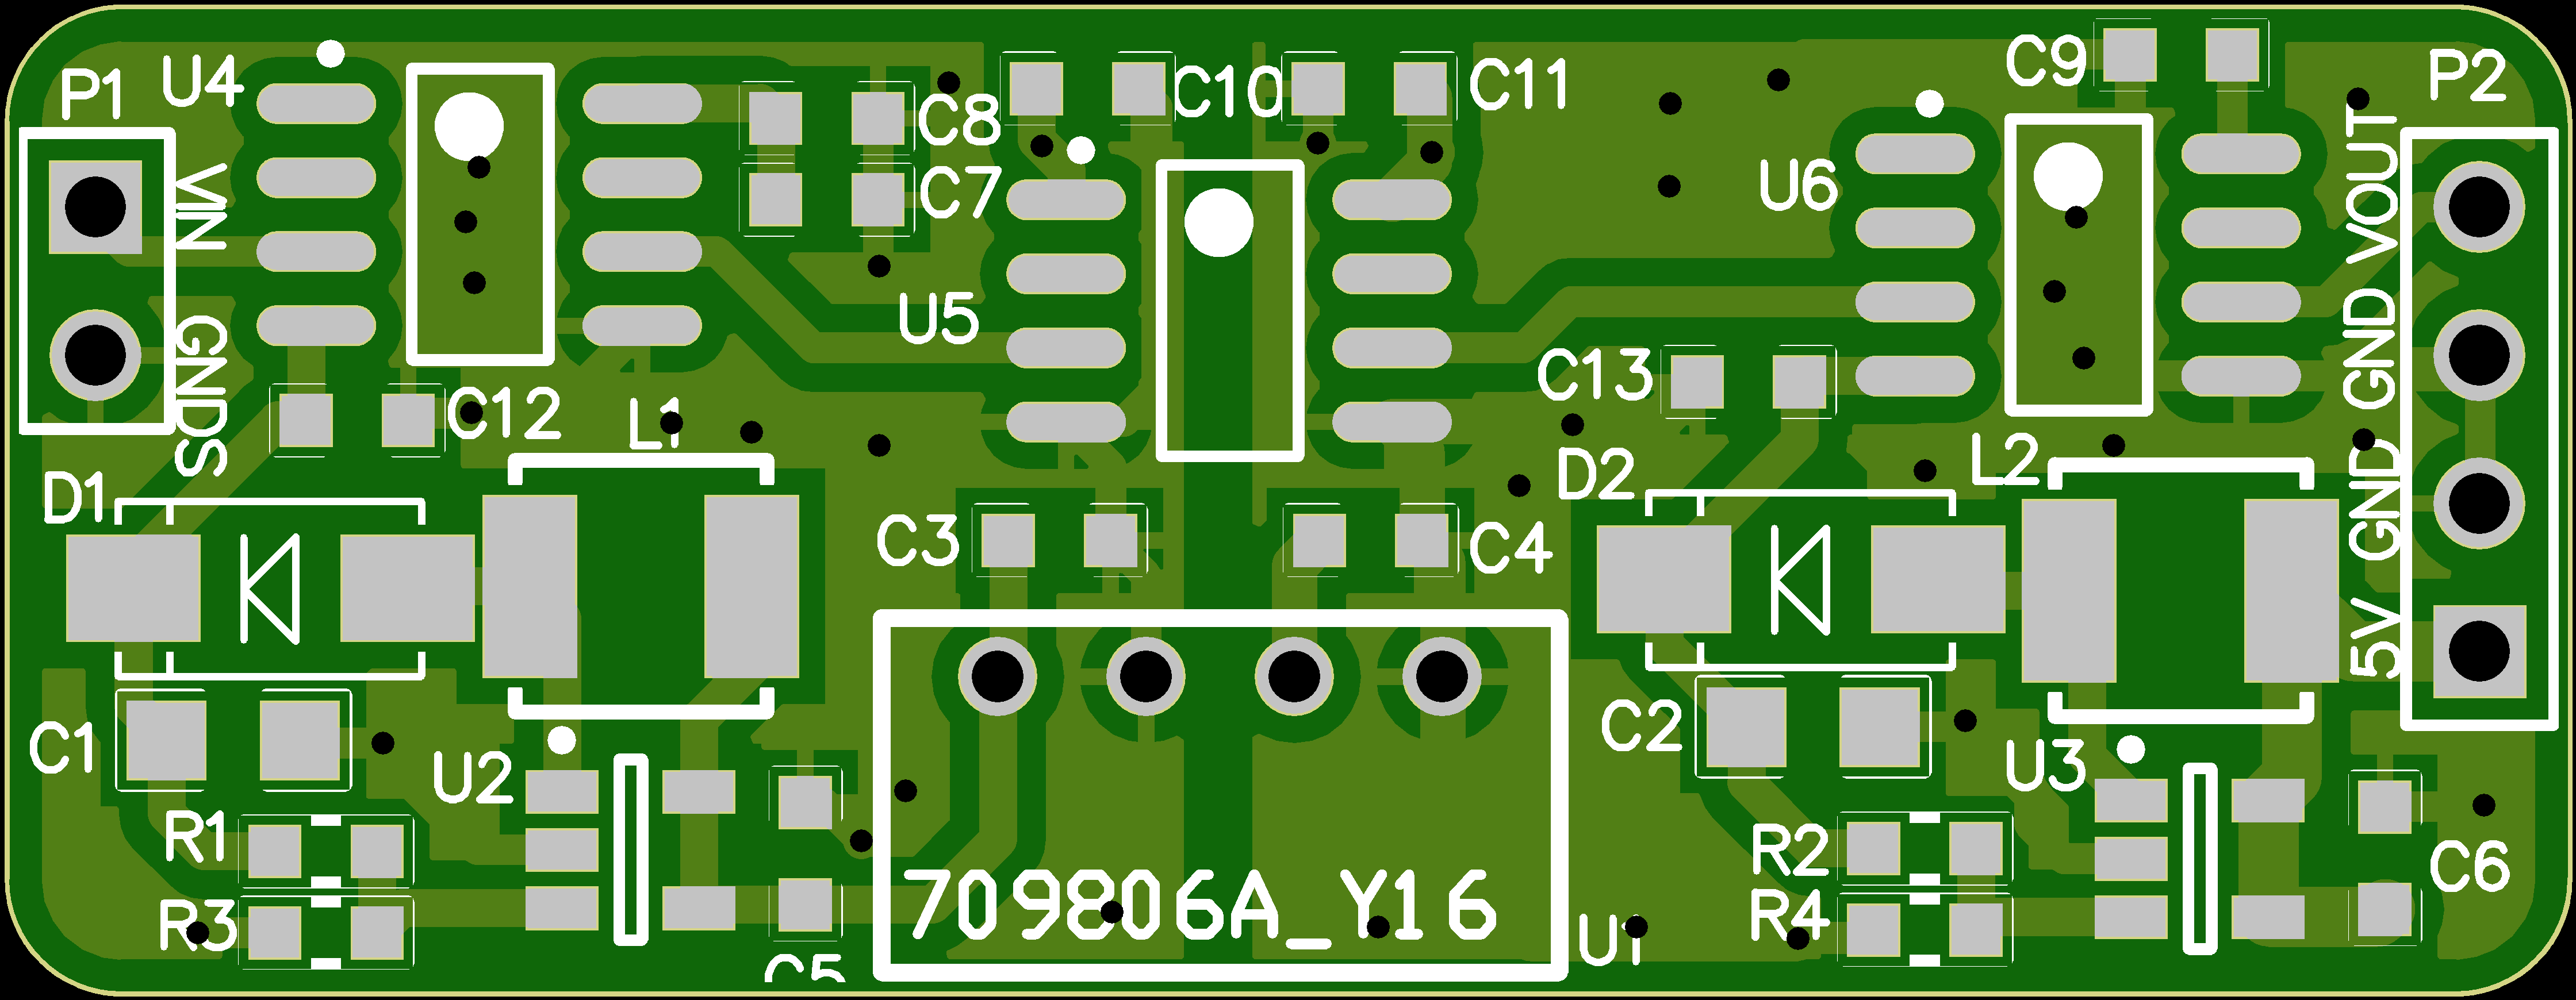 0-5V信号隔离模块PCB设计原理图1